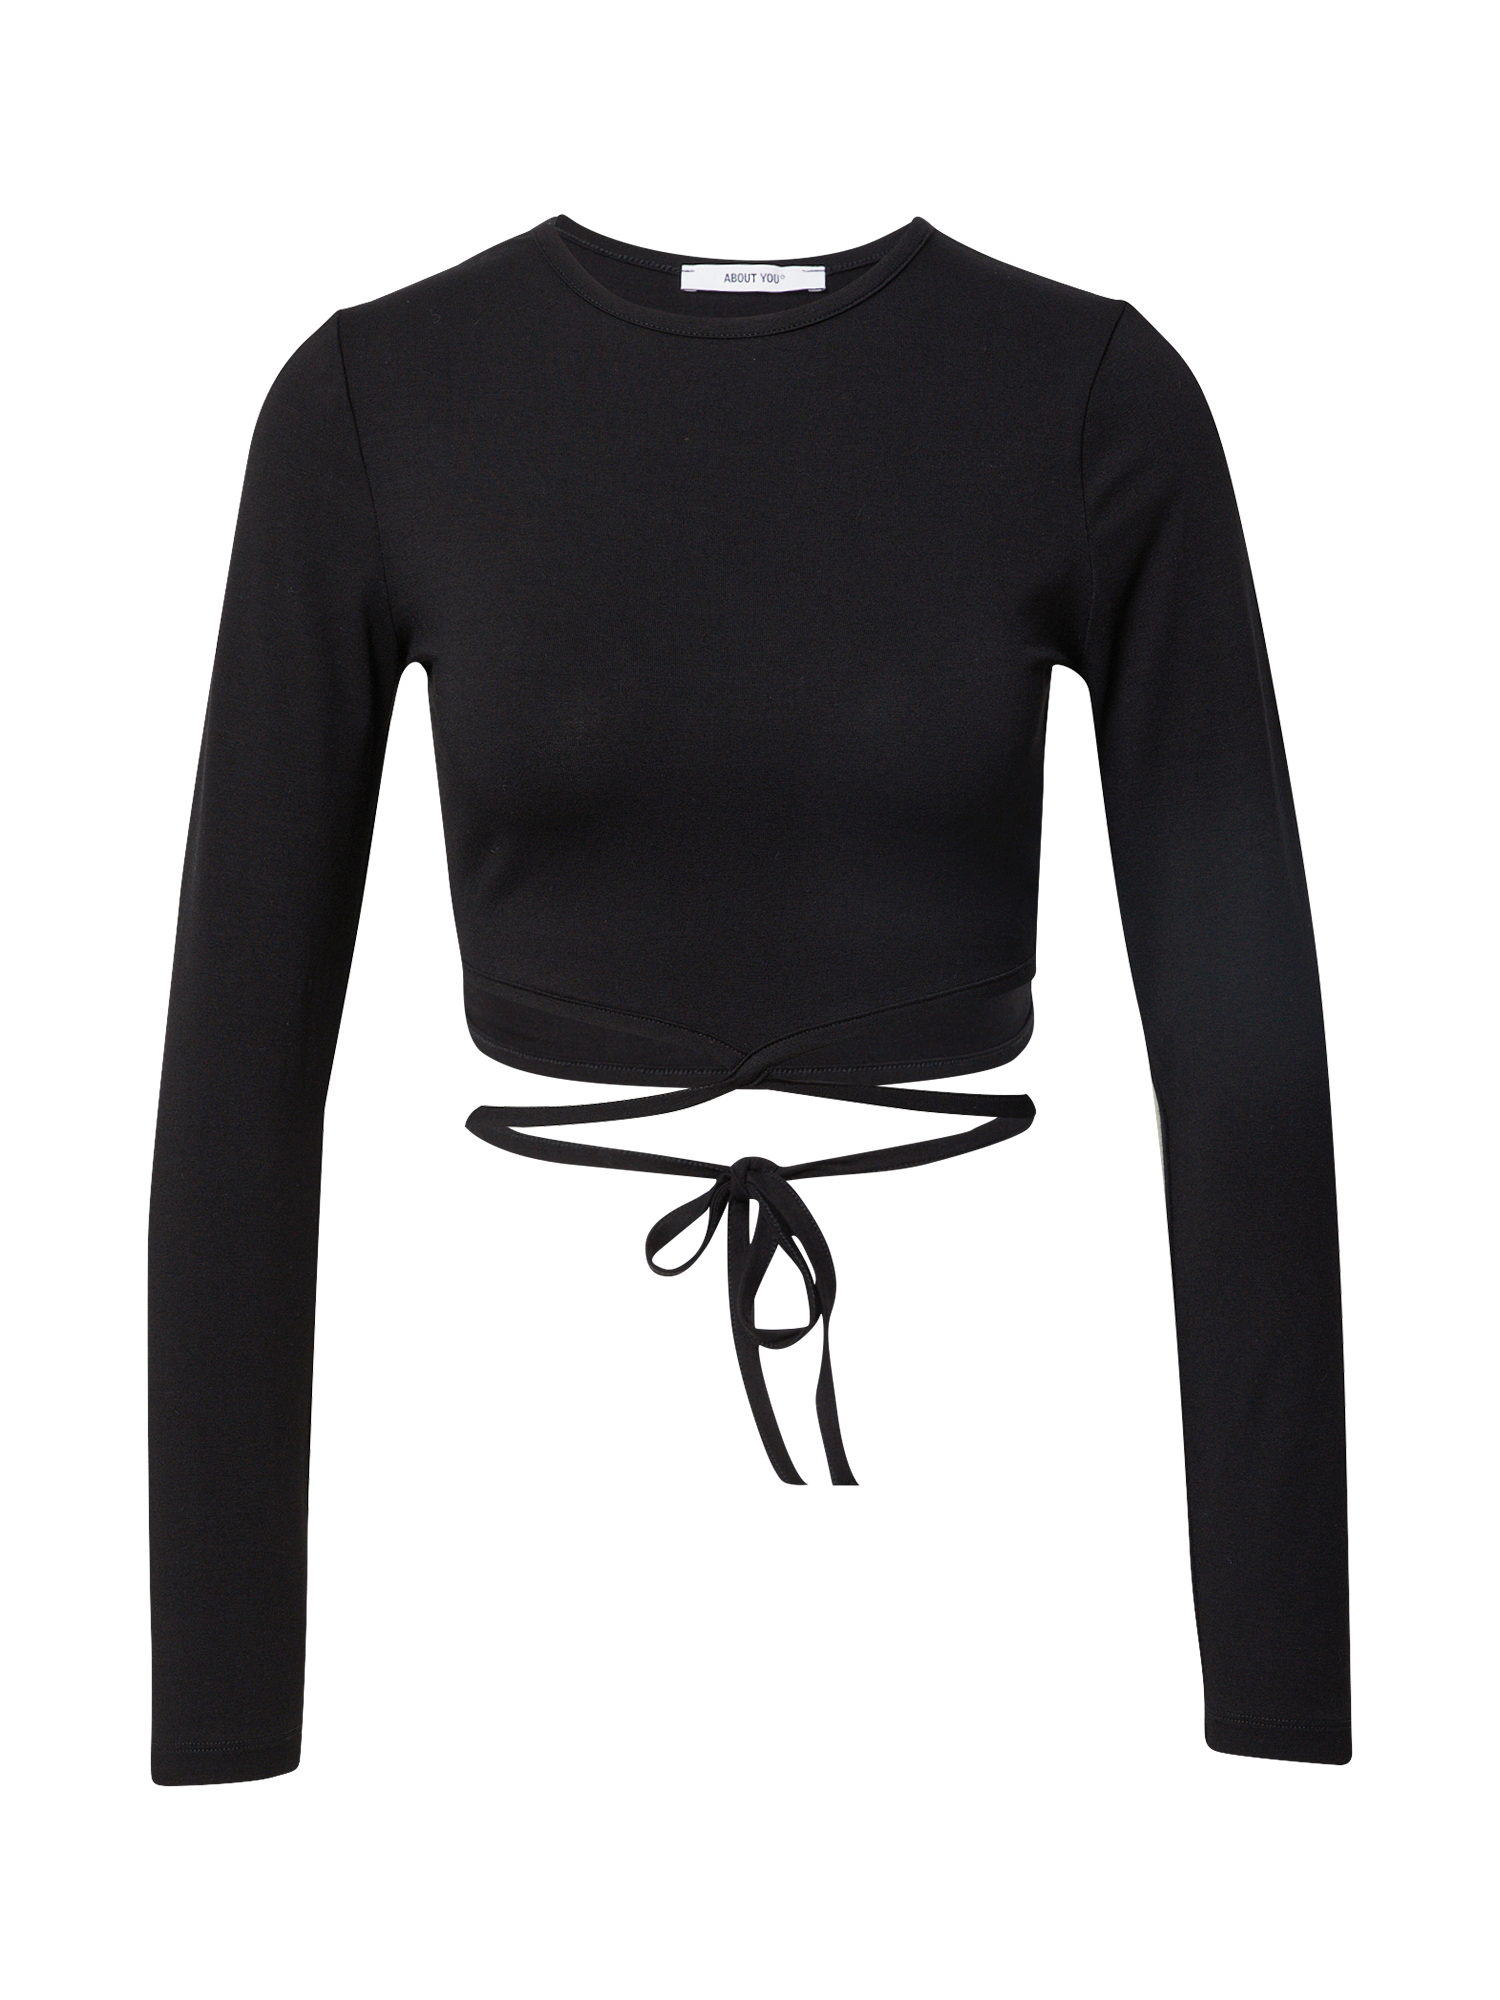 Odzież Kobiety  Koszulka Lenya w kolorze Czarnym 